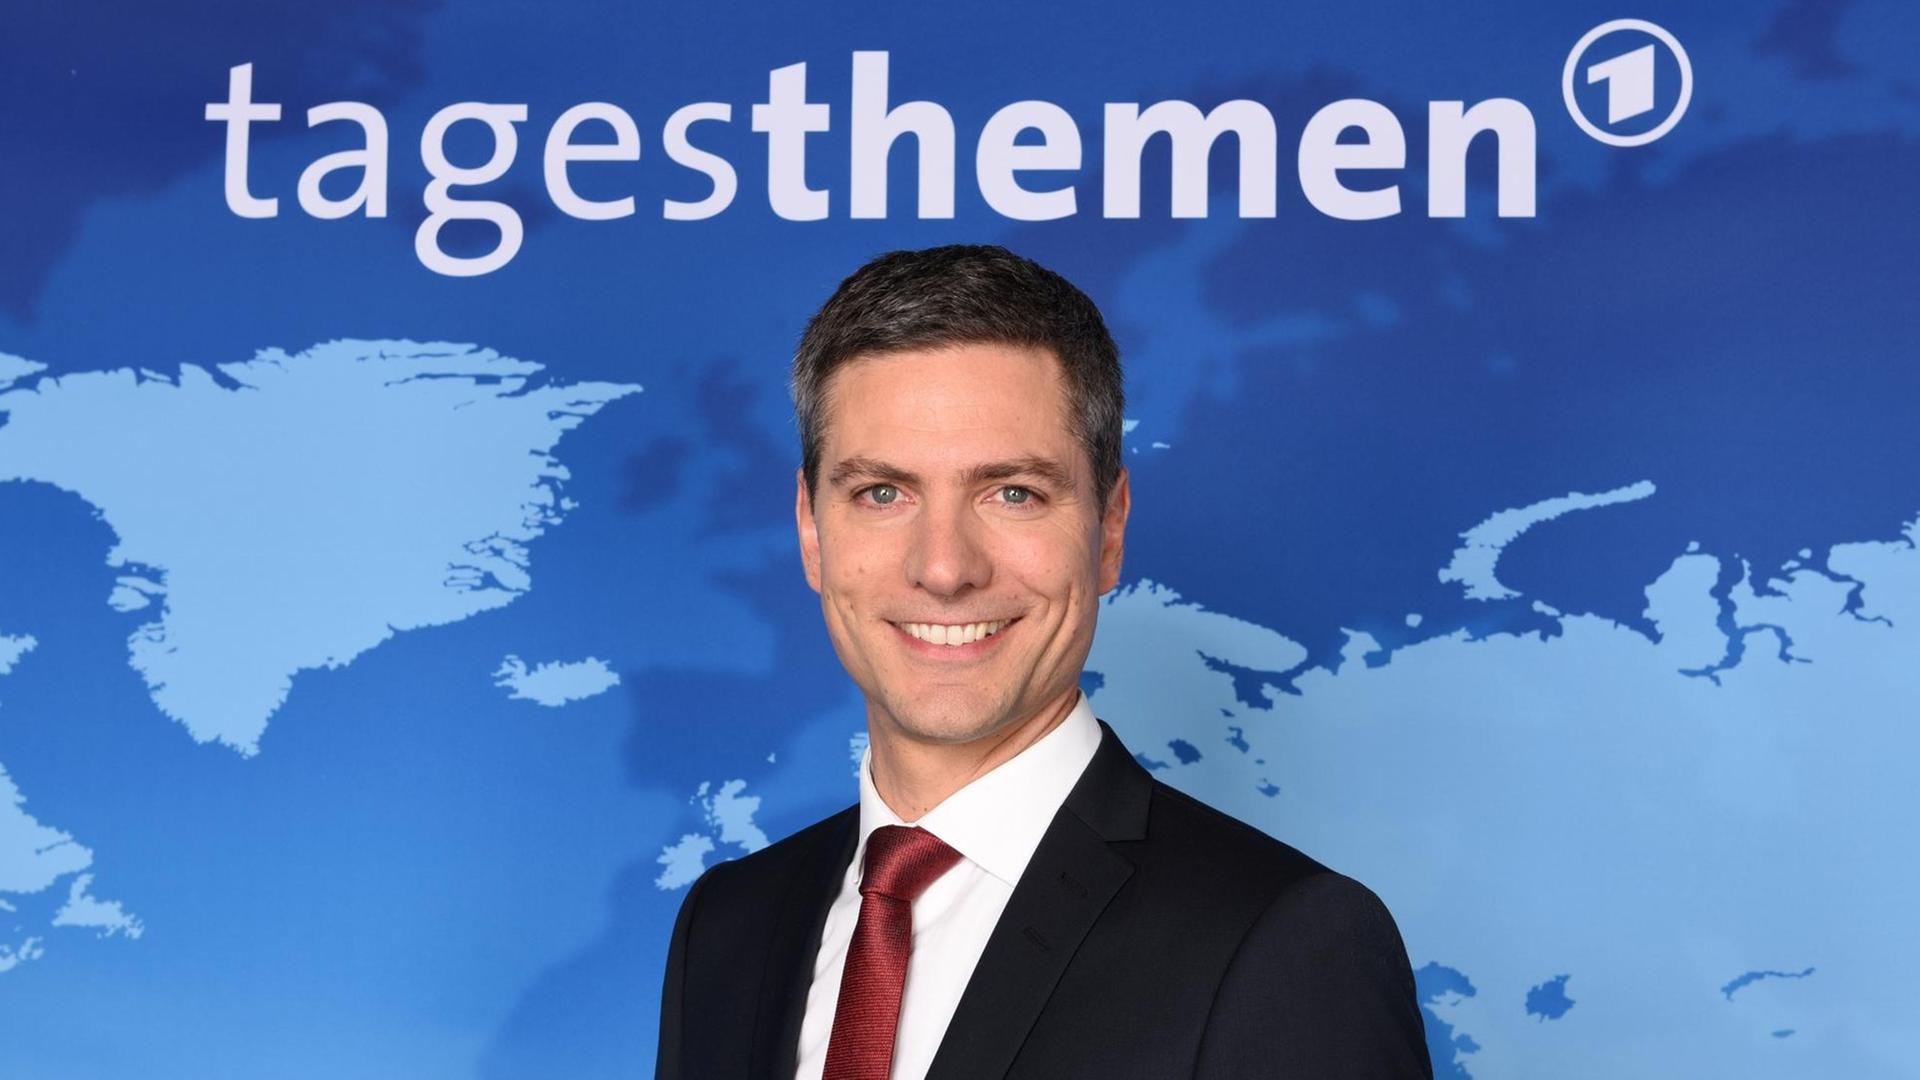 Tagesthemen-Moderator Ingo Zamperoni lächelt bei einem Fototermin vor dem Hintergrund der Nachrichtensendung